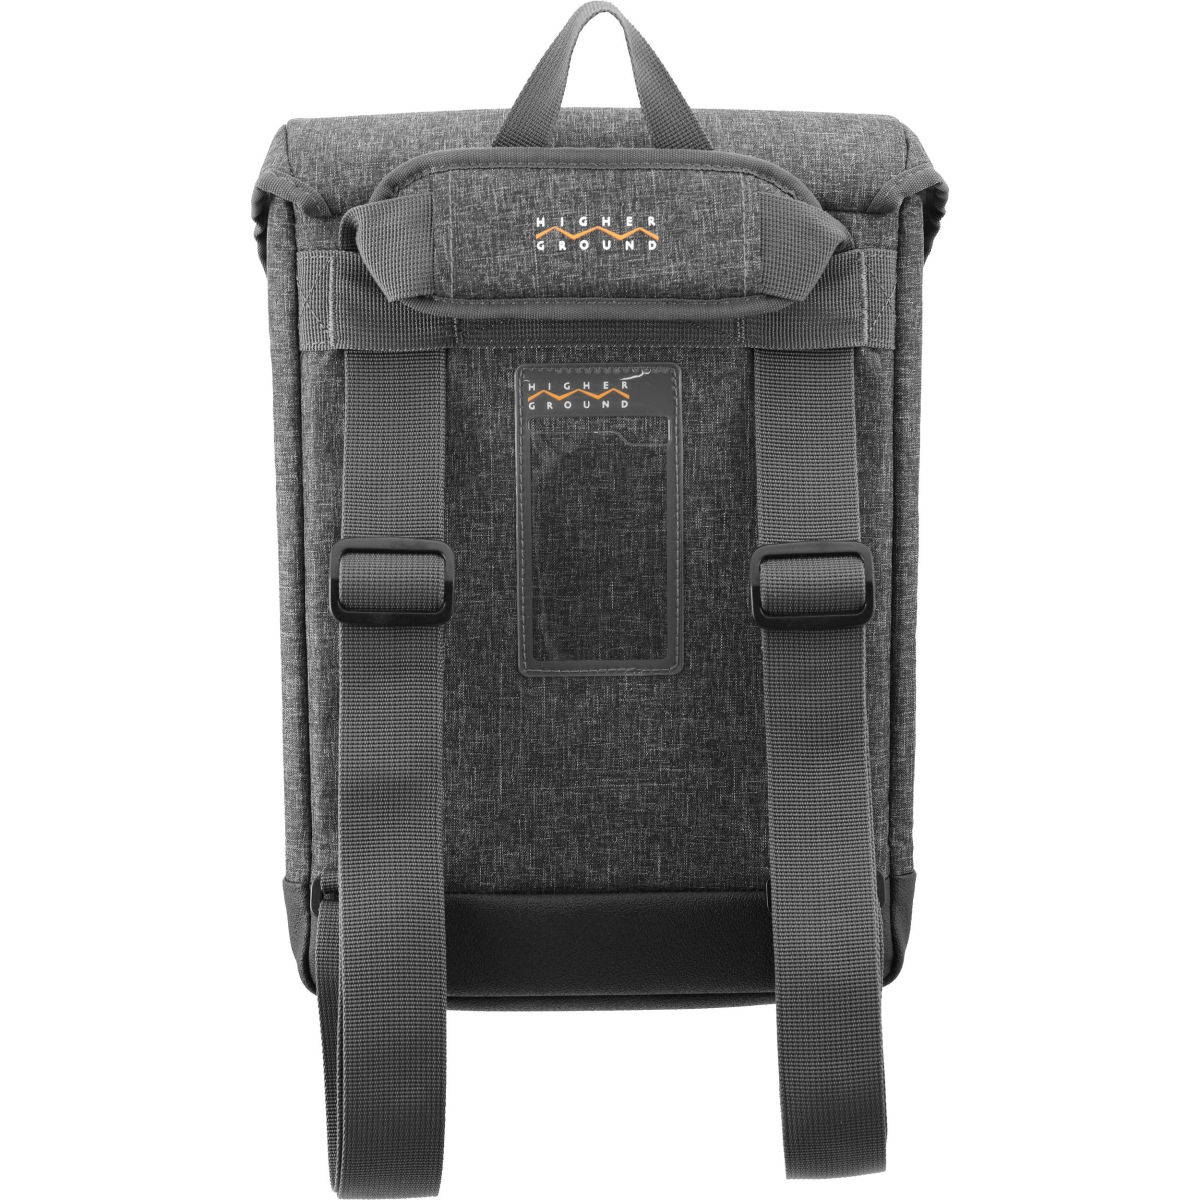 Vrt3.1-011gry 11 In. Convertable Shoulder Bag & Backpack For Laptop, Grey